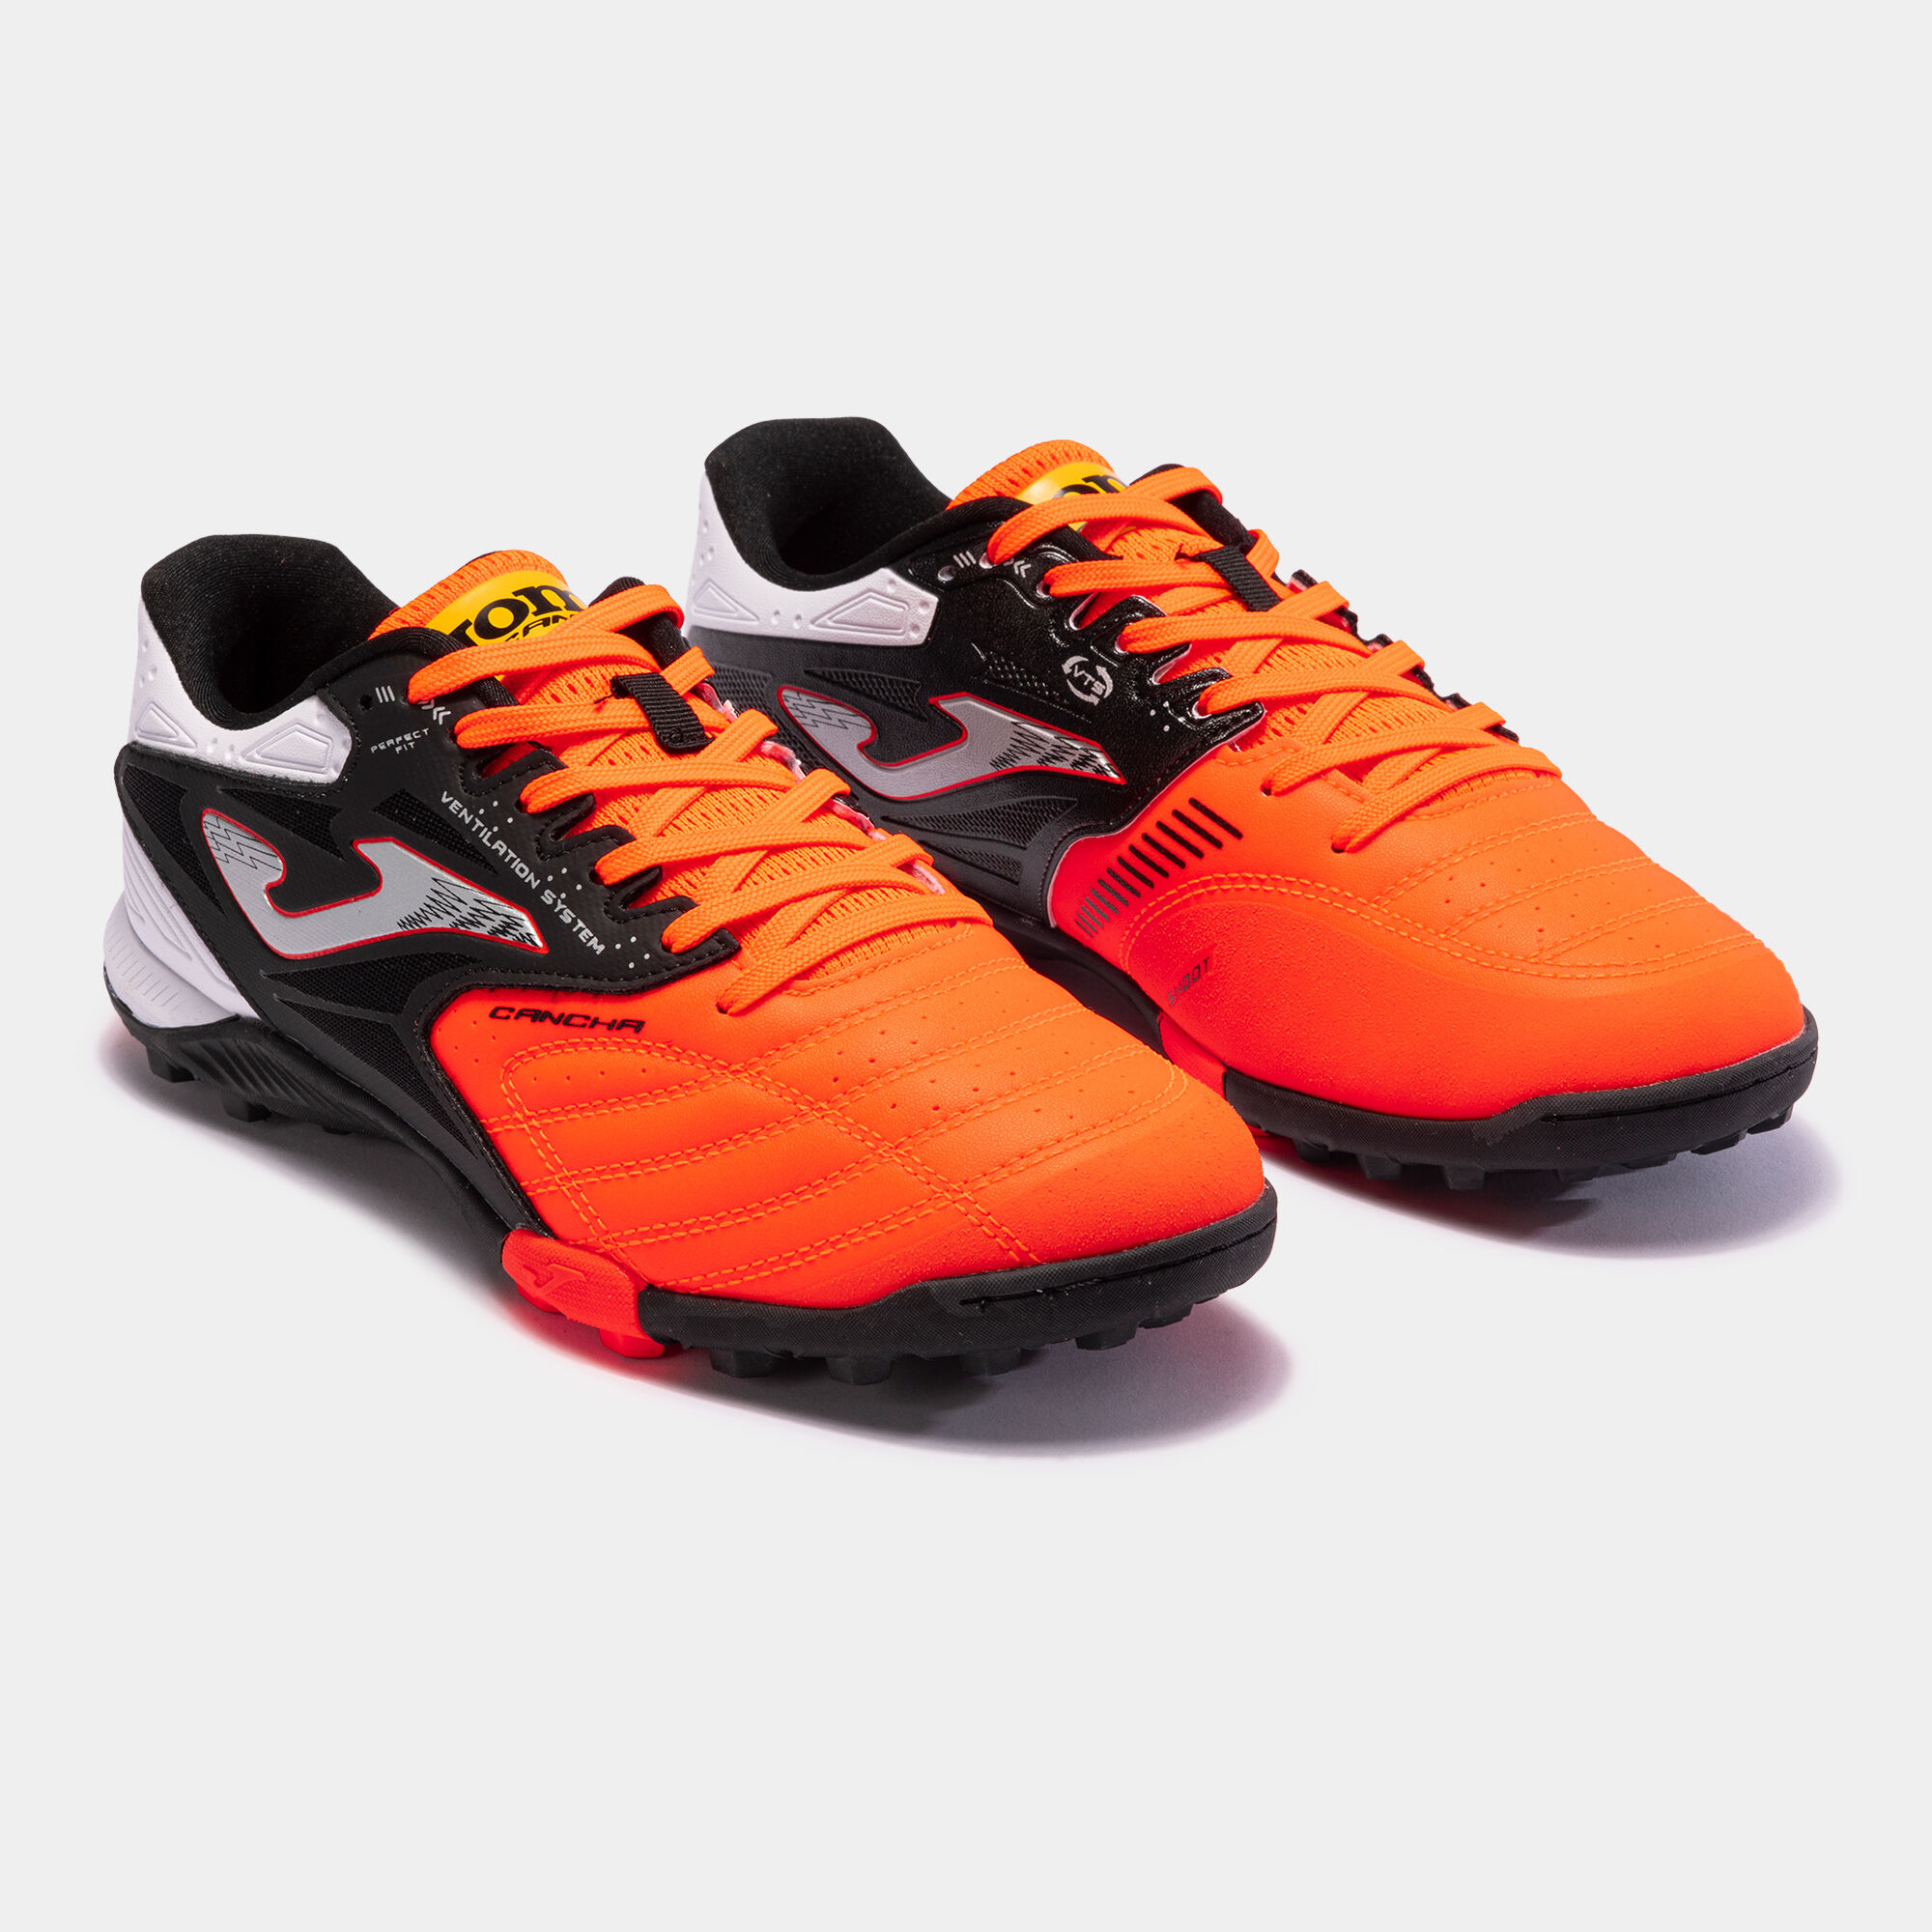 Buty piłkarskie Cancha 23 syntetyczna nawierzchnia turf pomaranczowy czarny